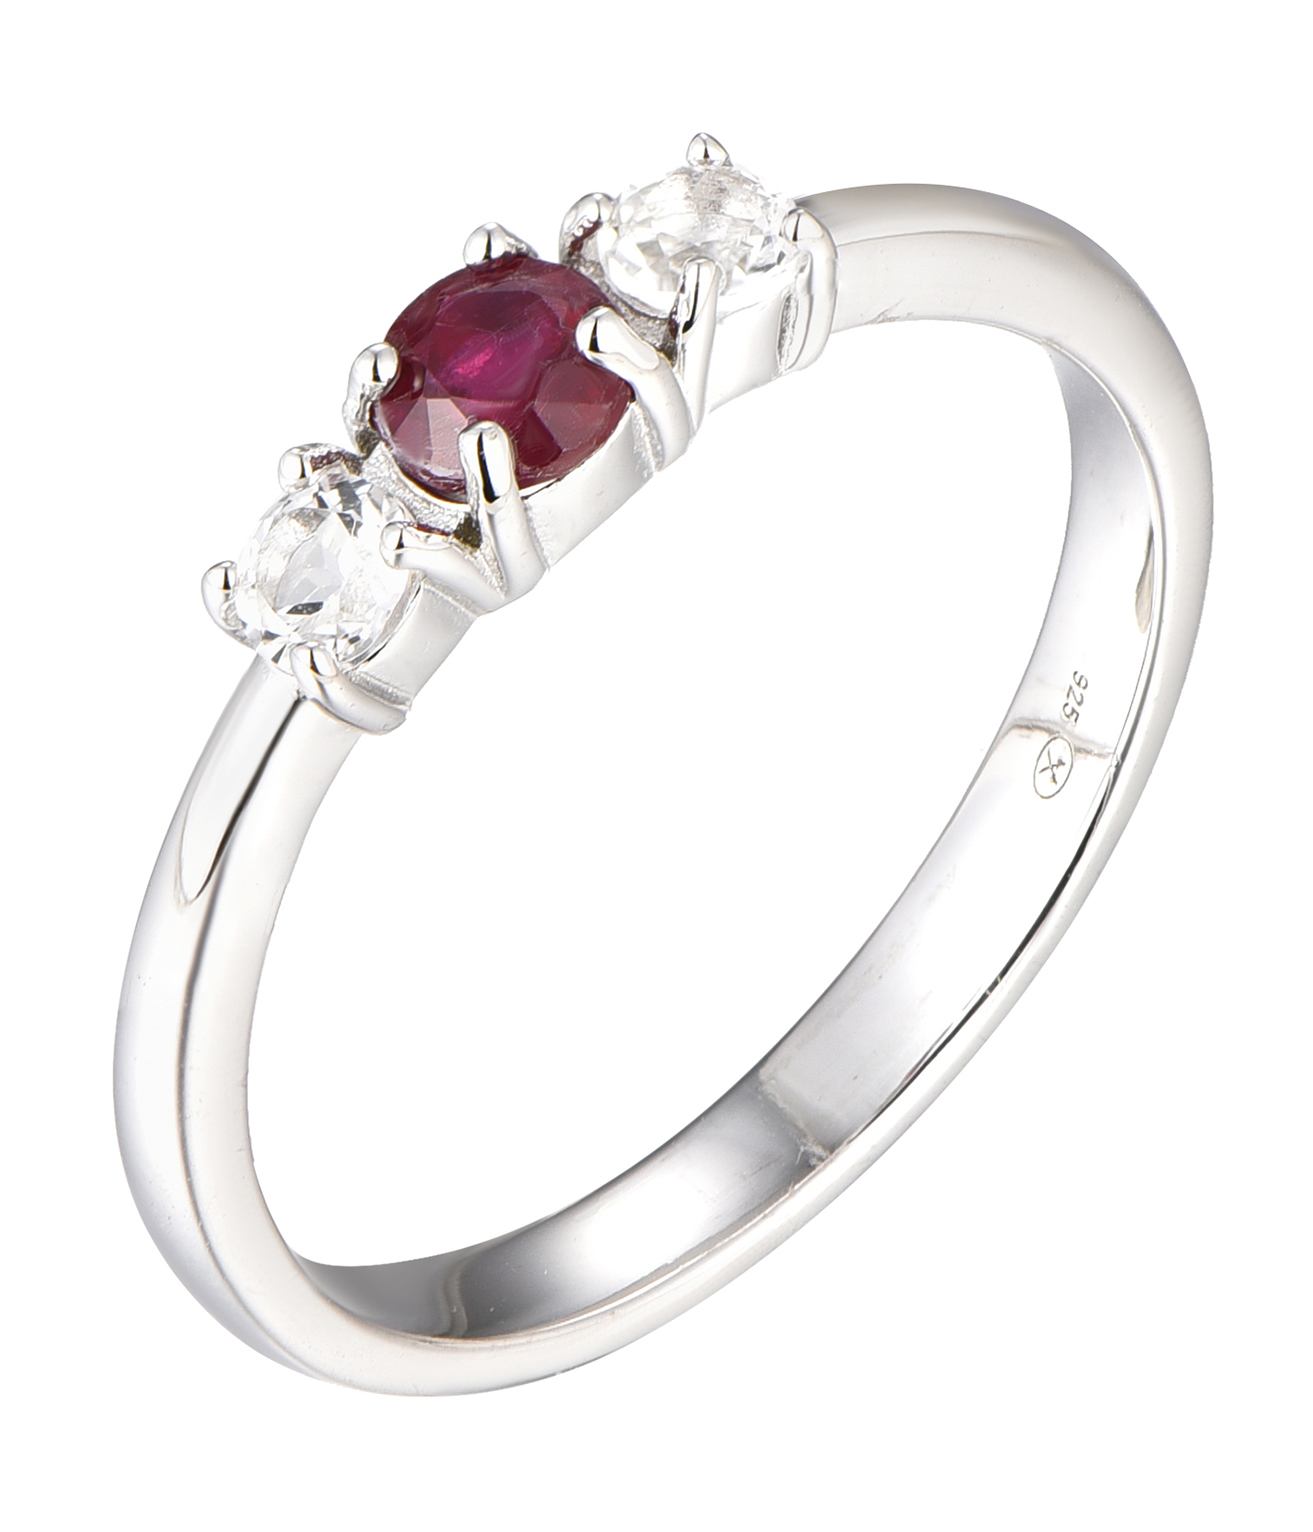 Brilio Silver -  Blýštivý stříbrný prsten s rubínem Precious Stone SR09003C 50 mm